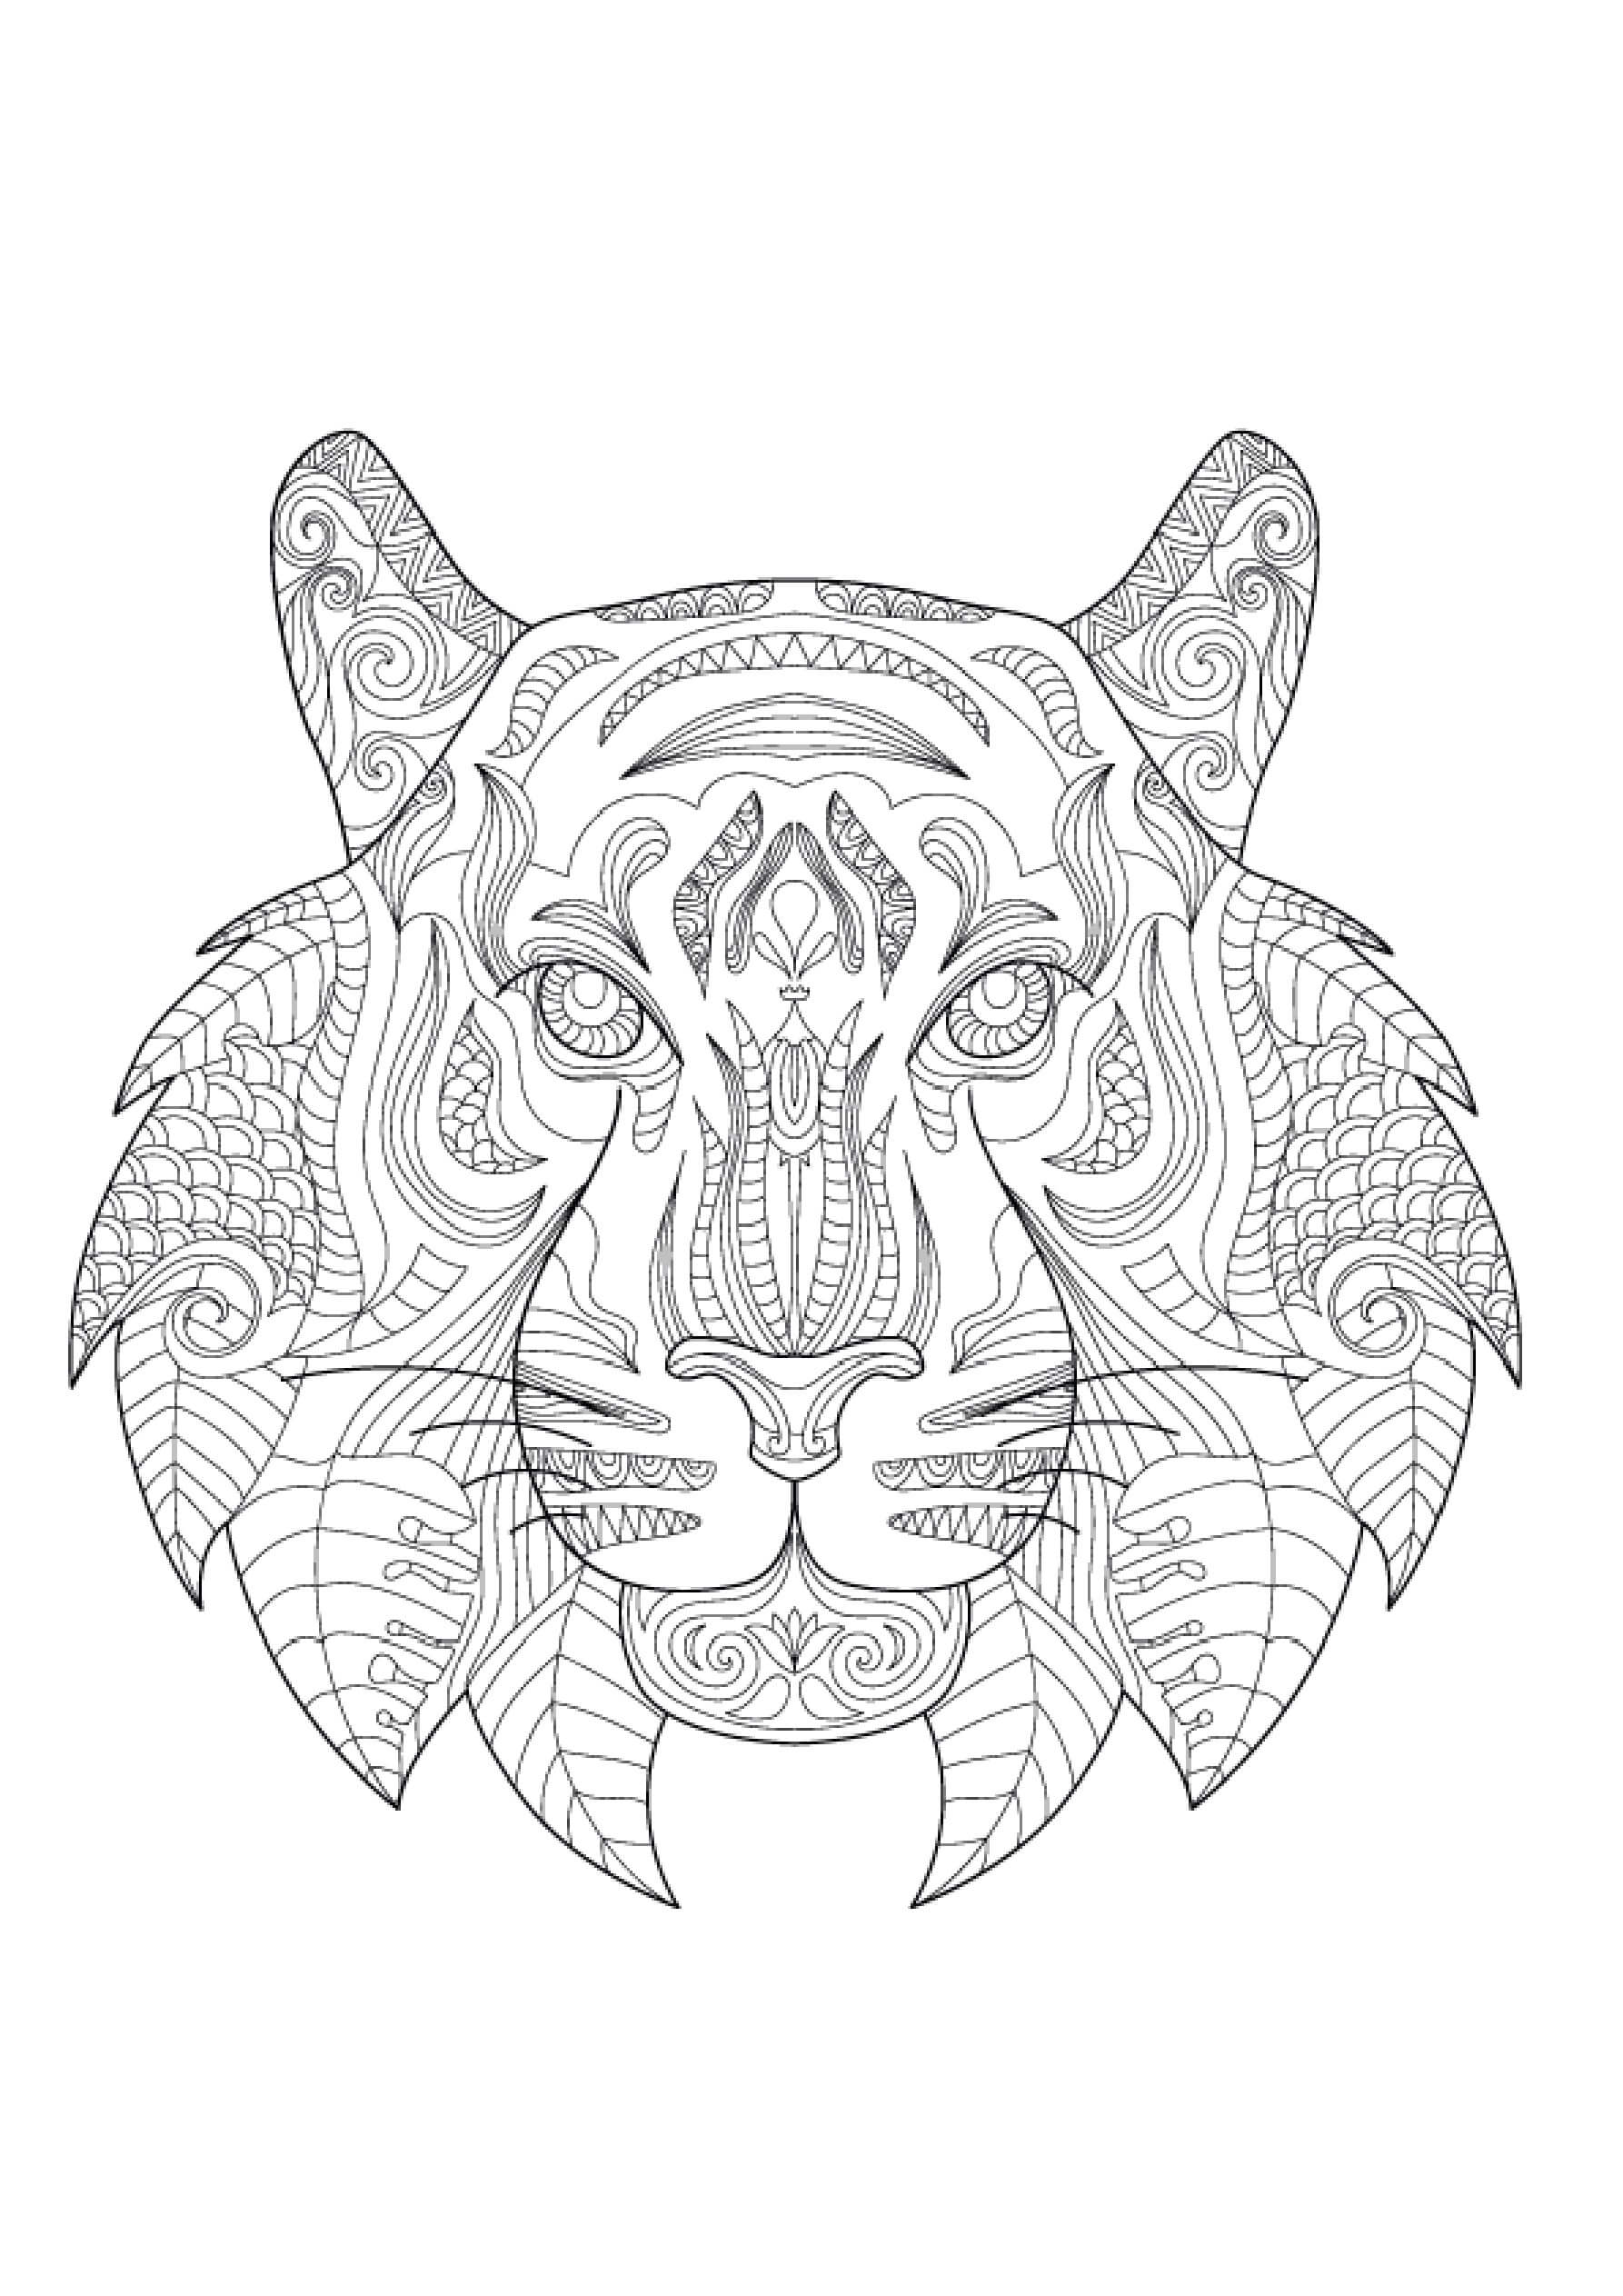 Mandala Tiger Coloring Page - Sheet 2 Mandalas